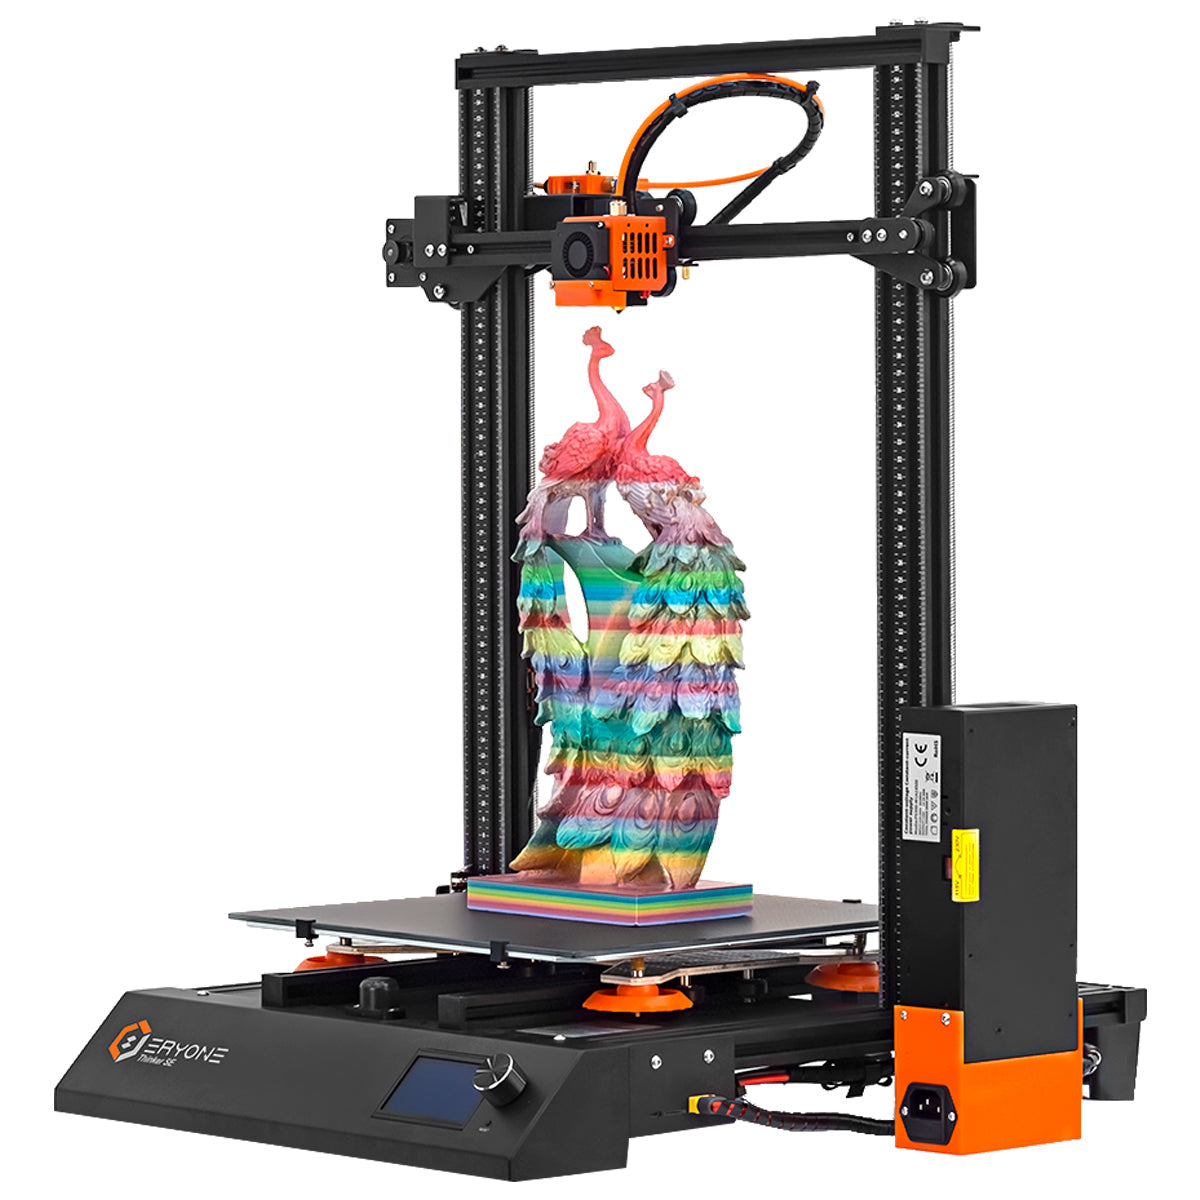 Eryone 3D Printer ER-20